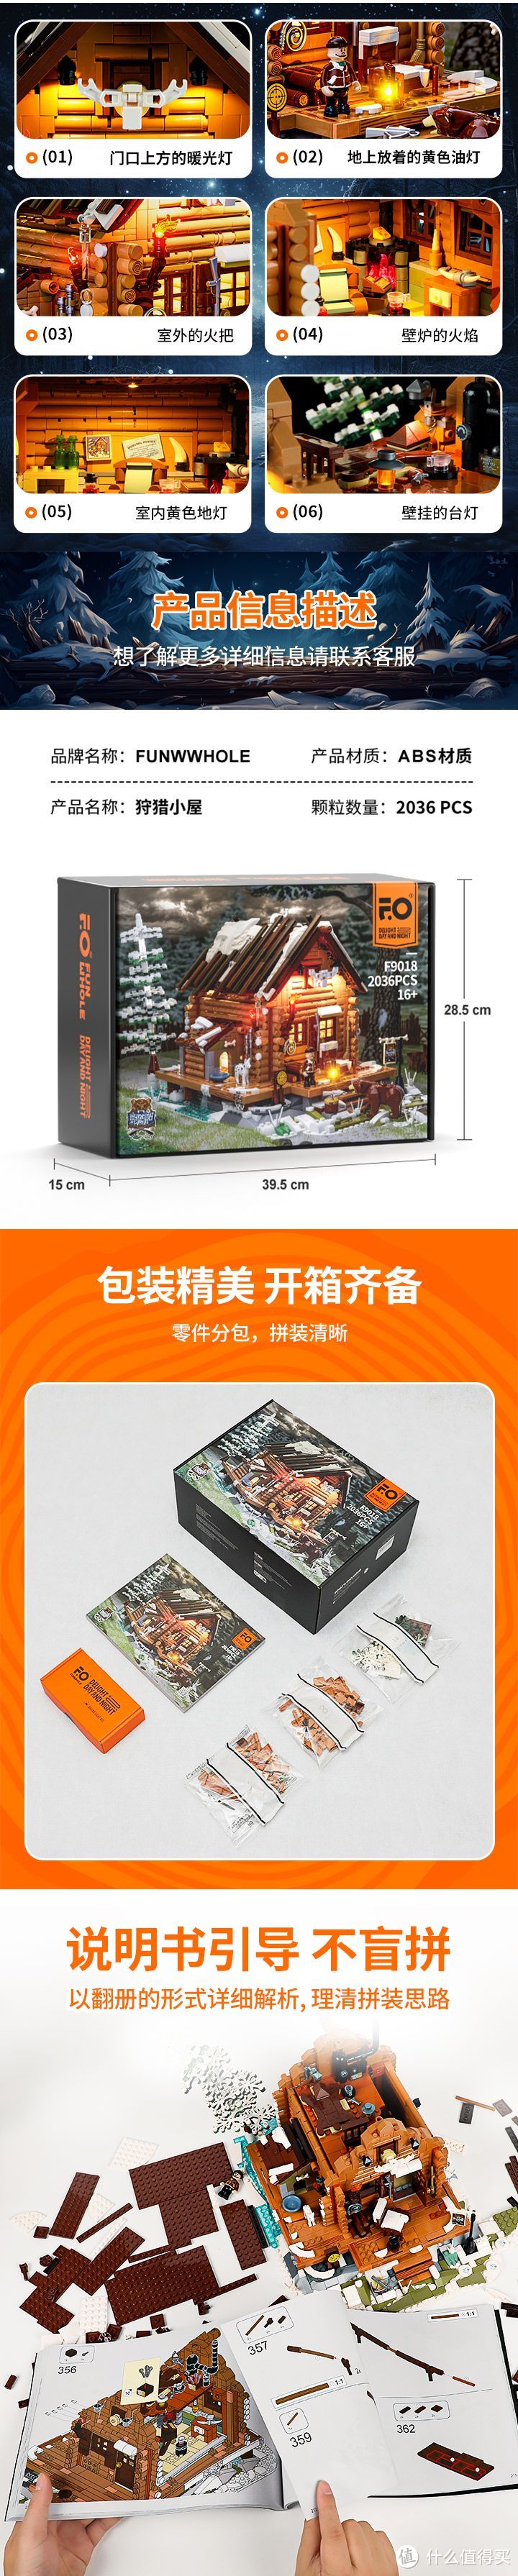 公认的中国积木灯光天花板之一，渲染图片也非常天花板，希望保持